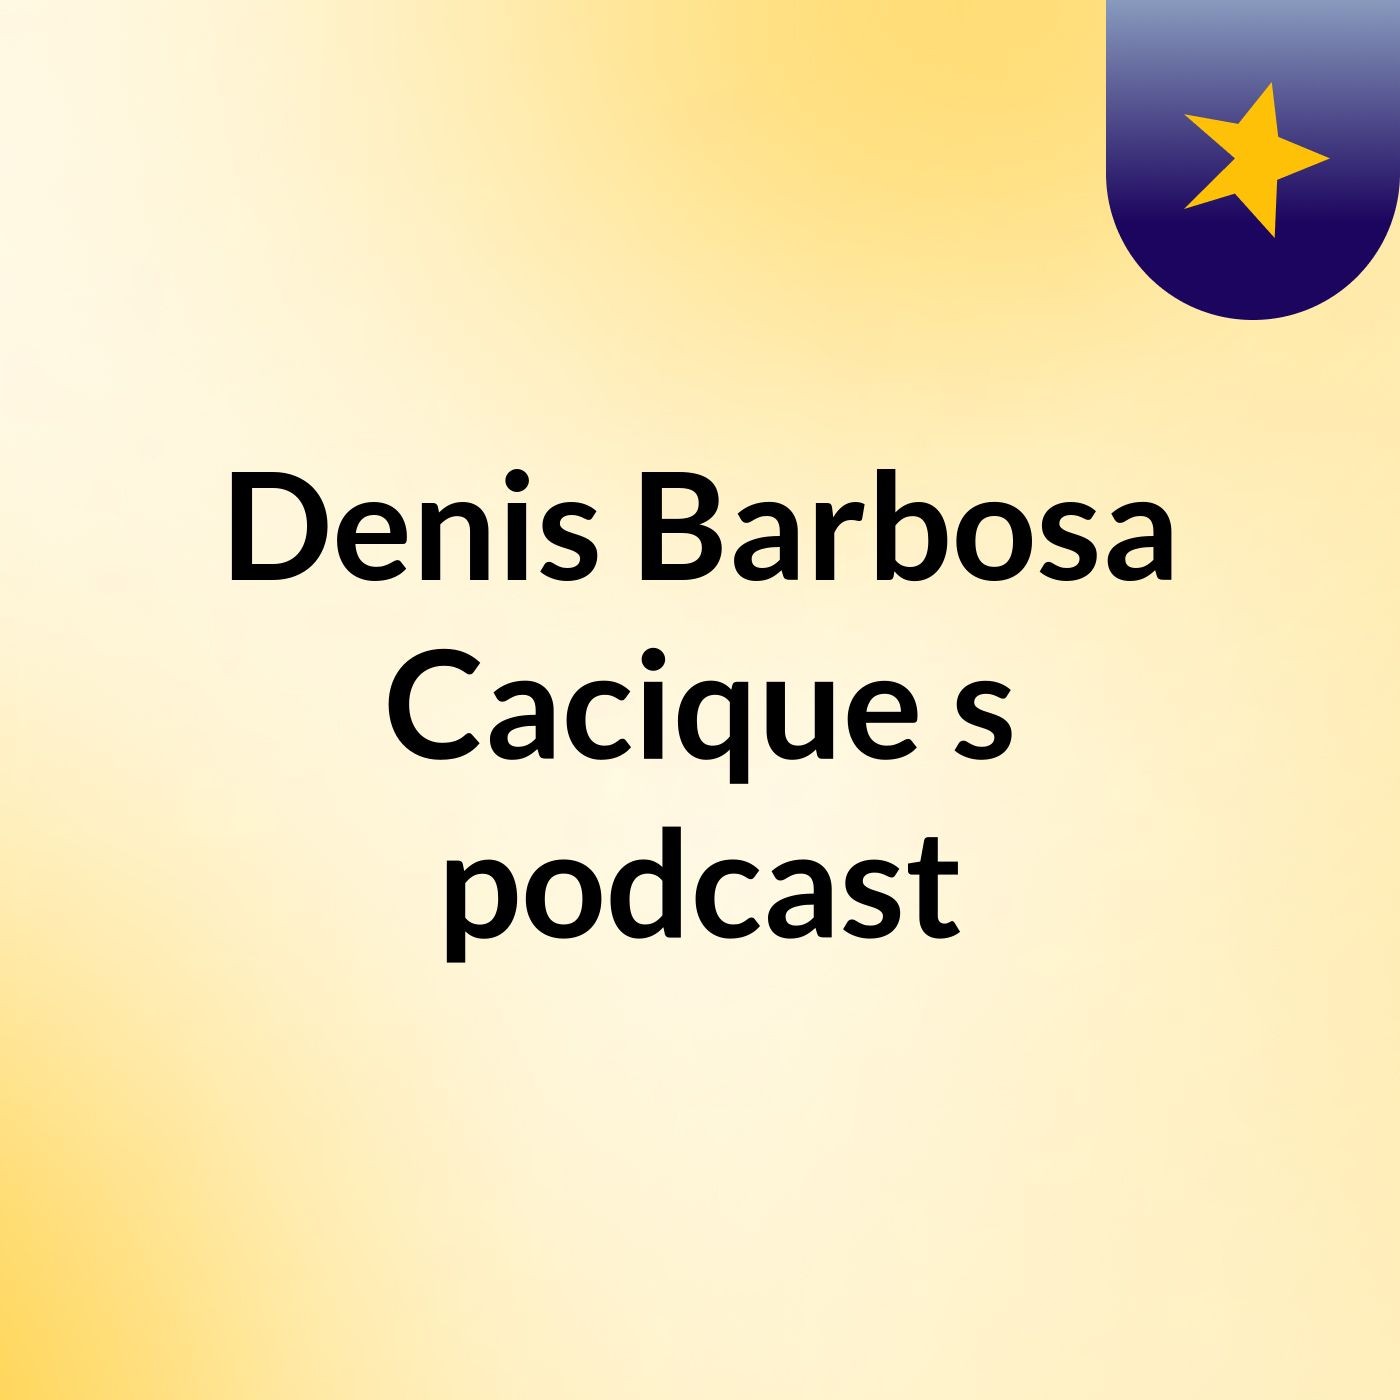 Denis Barbosa Cacique's podcast